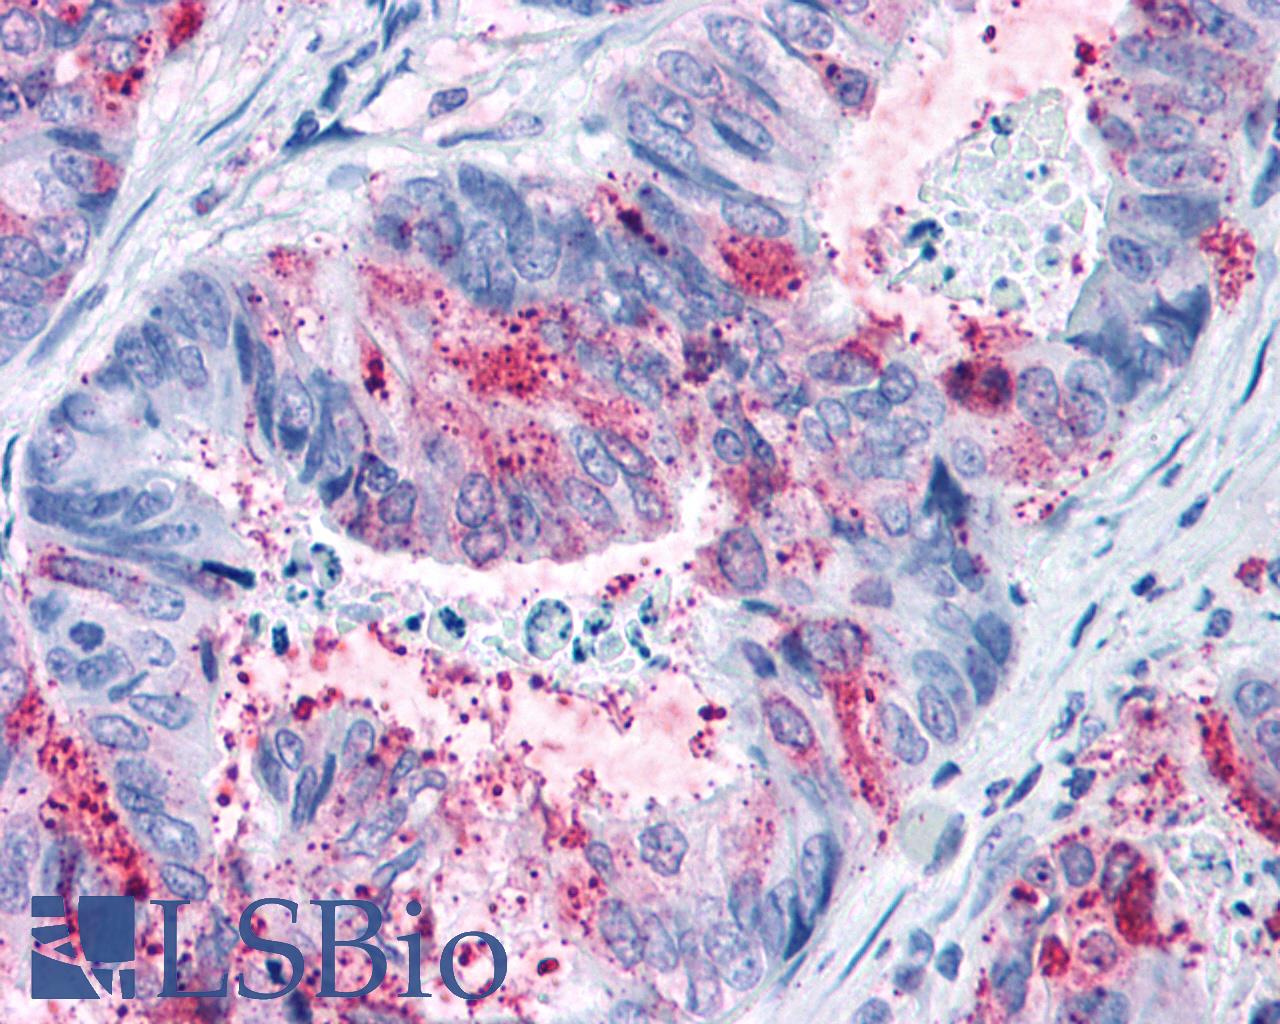 GPR82 Antibody - Colon, Carcinoma